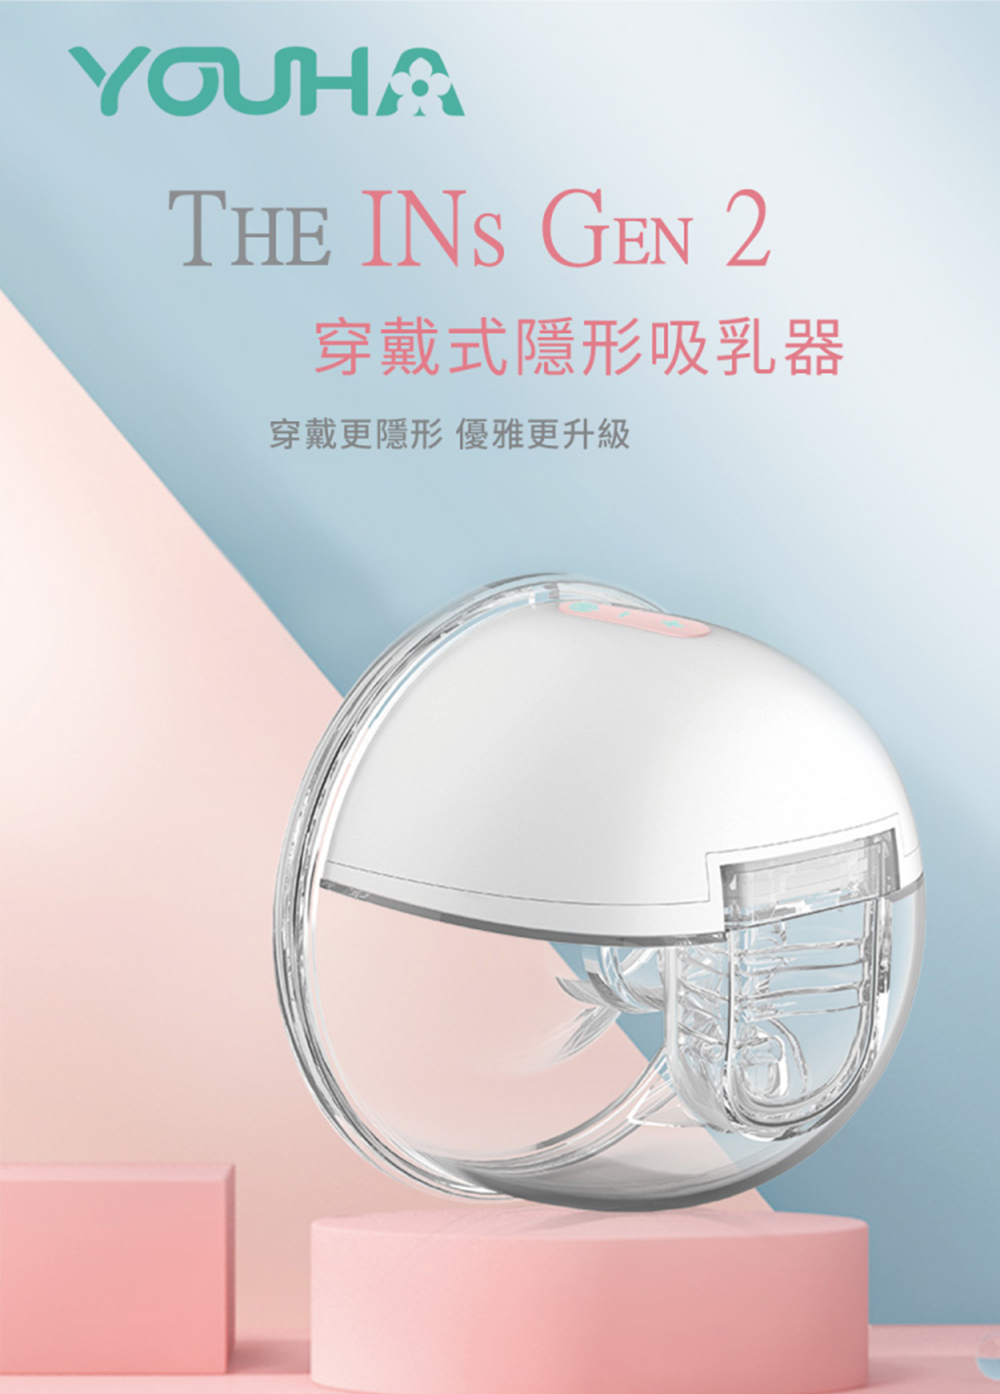 優合 THE INs GEN 2 穿戴式隱形吸乳器(單邊/藍